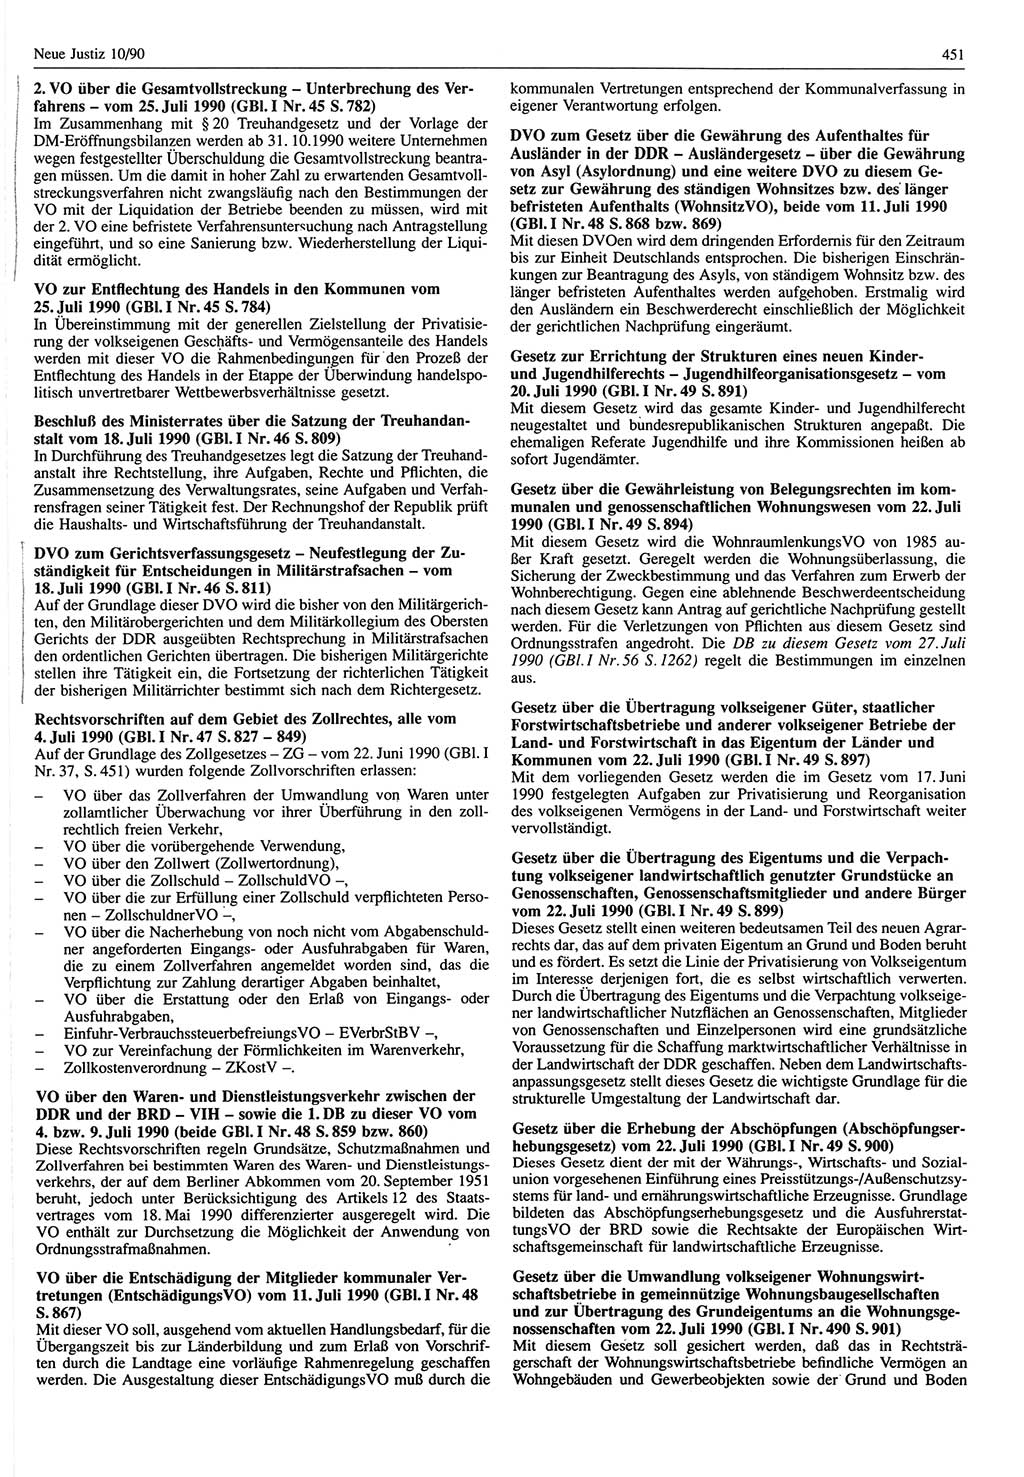 Neue Justiz (NJ), Zeitschrift für Rechtsetzung und Rechtsanwendung [Deutsche Demokratische Republik (DDR)], 44. Jahrgang 1990, Seite 451 (NJ DDR 1990, S. 451)